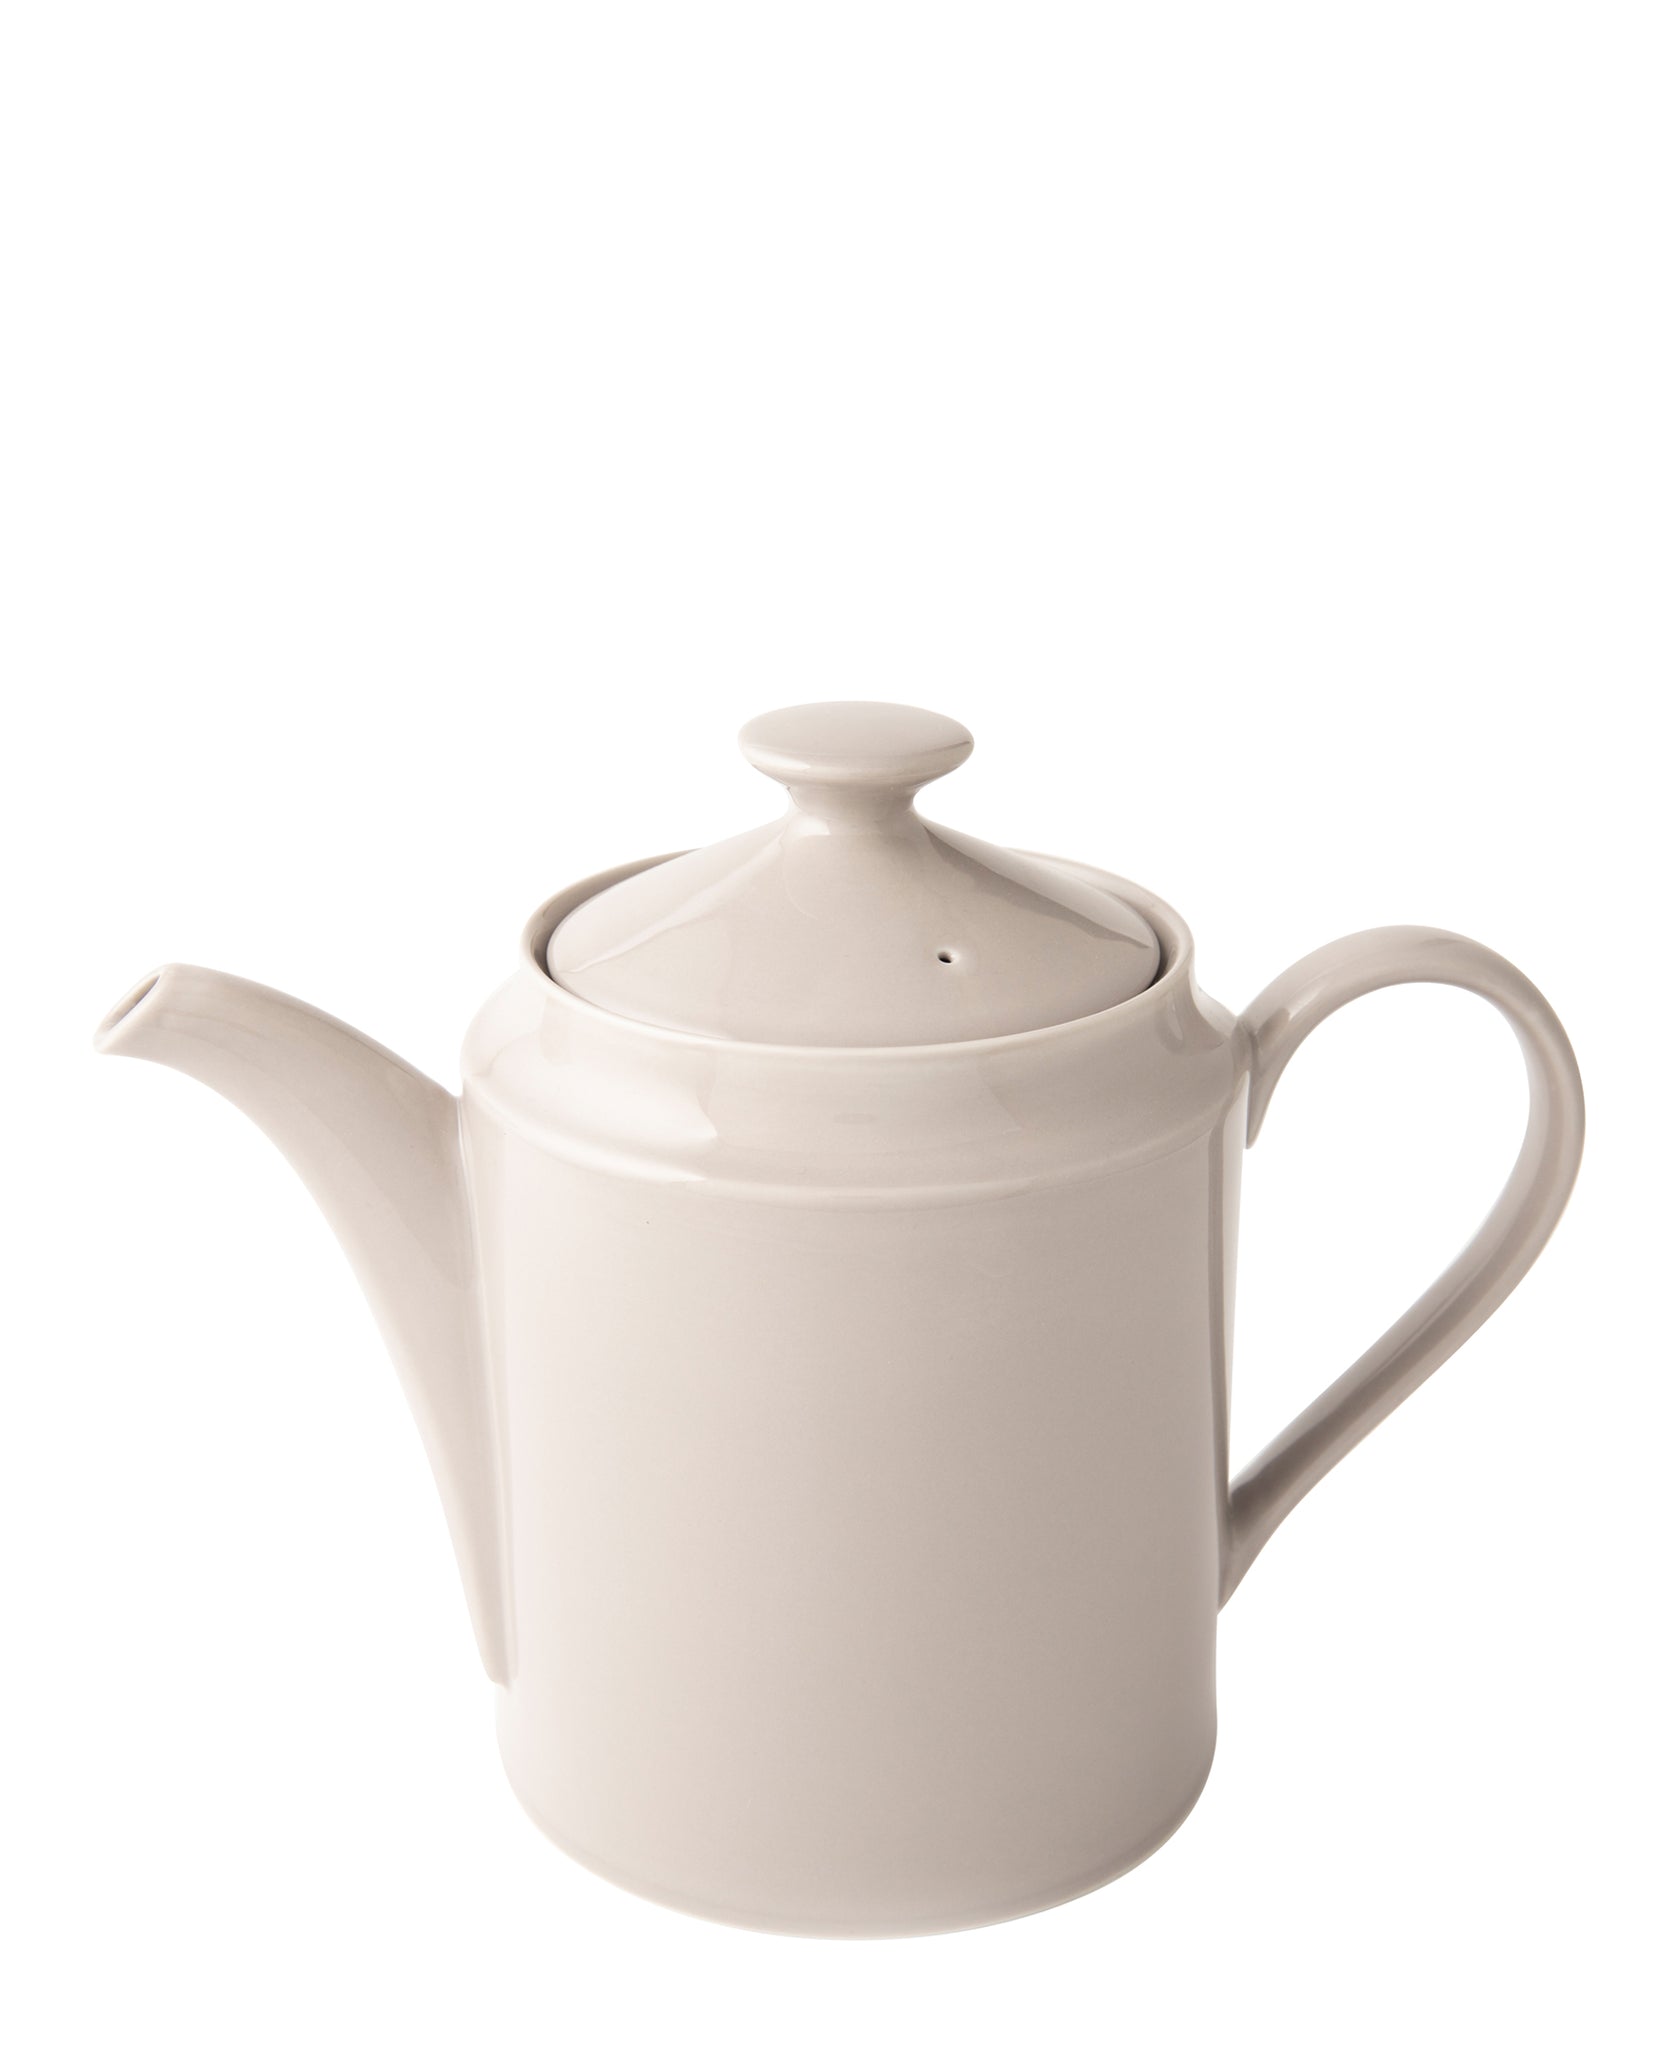 Omada Maxim Tea Pot 1L - Light Grey